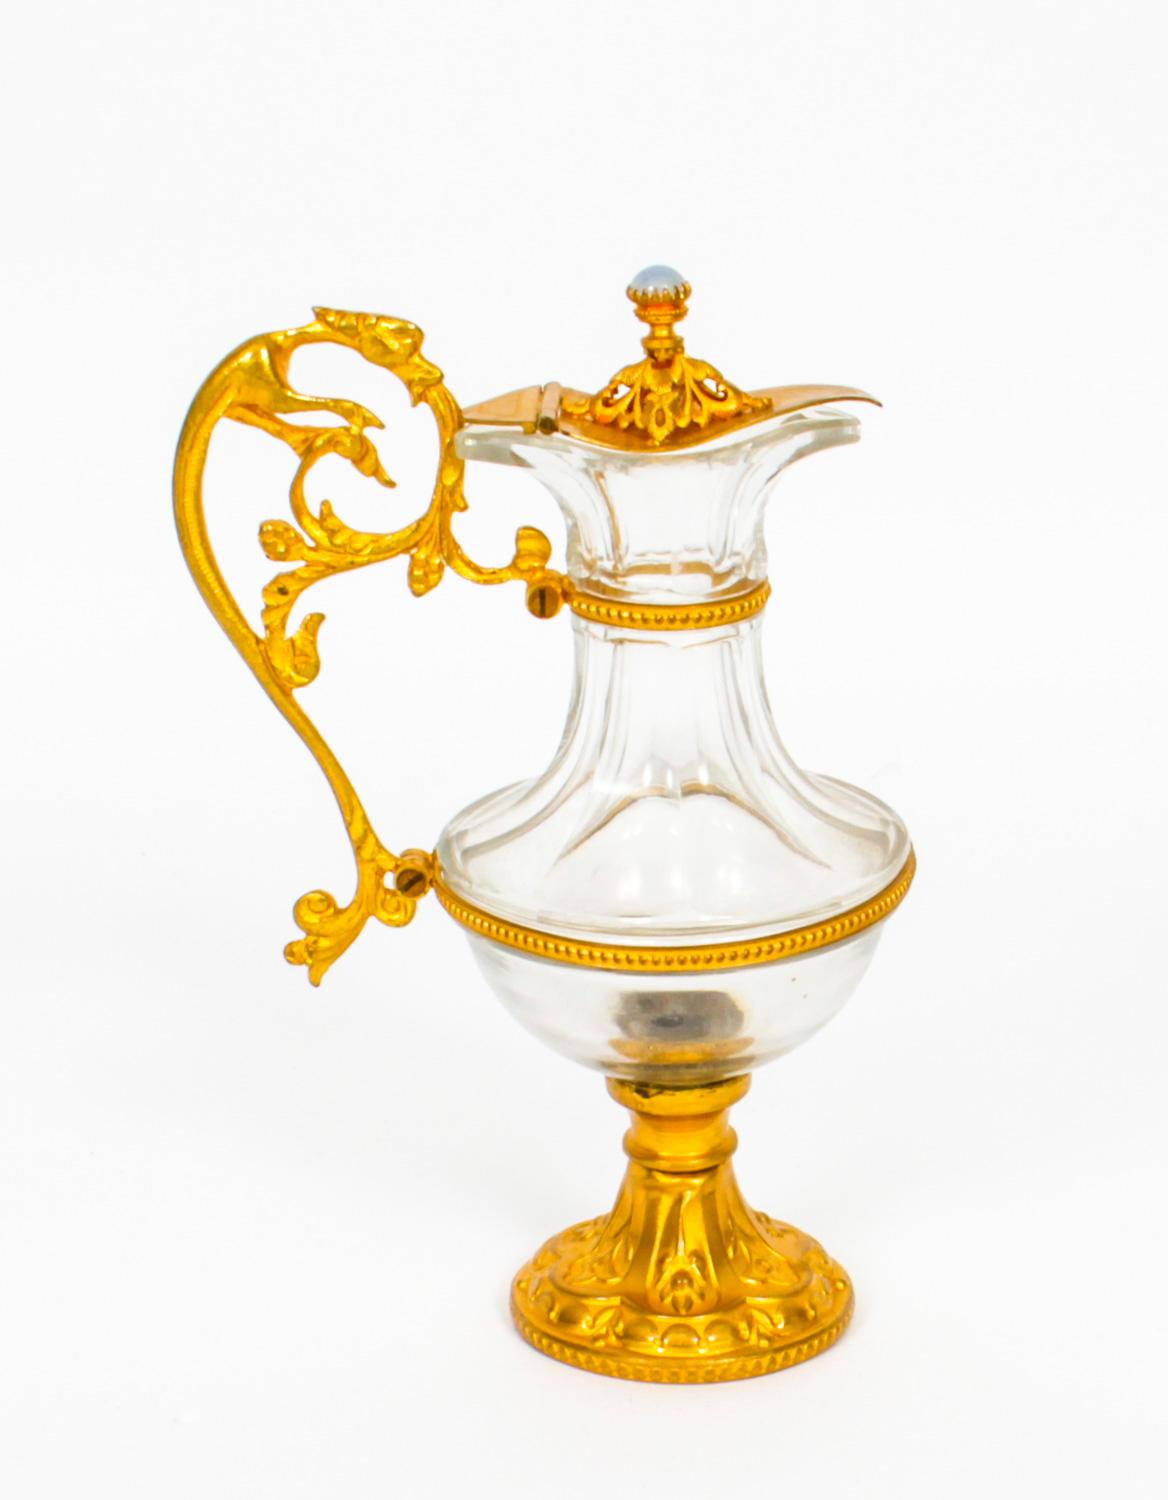 Il s'agit d'une superbe paire d'aiguières anciennes en verre doré, datant d'environ 1870.
Les couvercles à charnière sont ornés de fleurons en pierre semi-précieuse de type cabouchon et de poignées en forme de bêtes mythiques. Les corps en verre